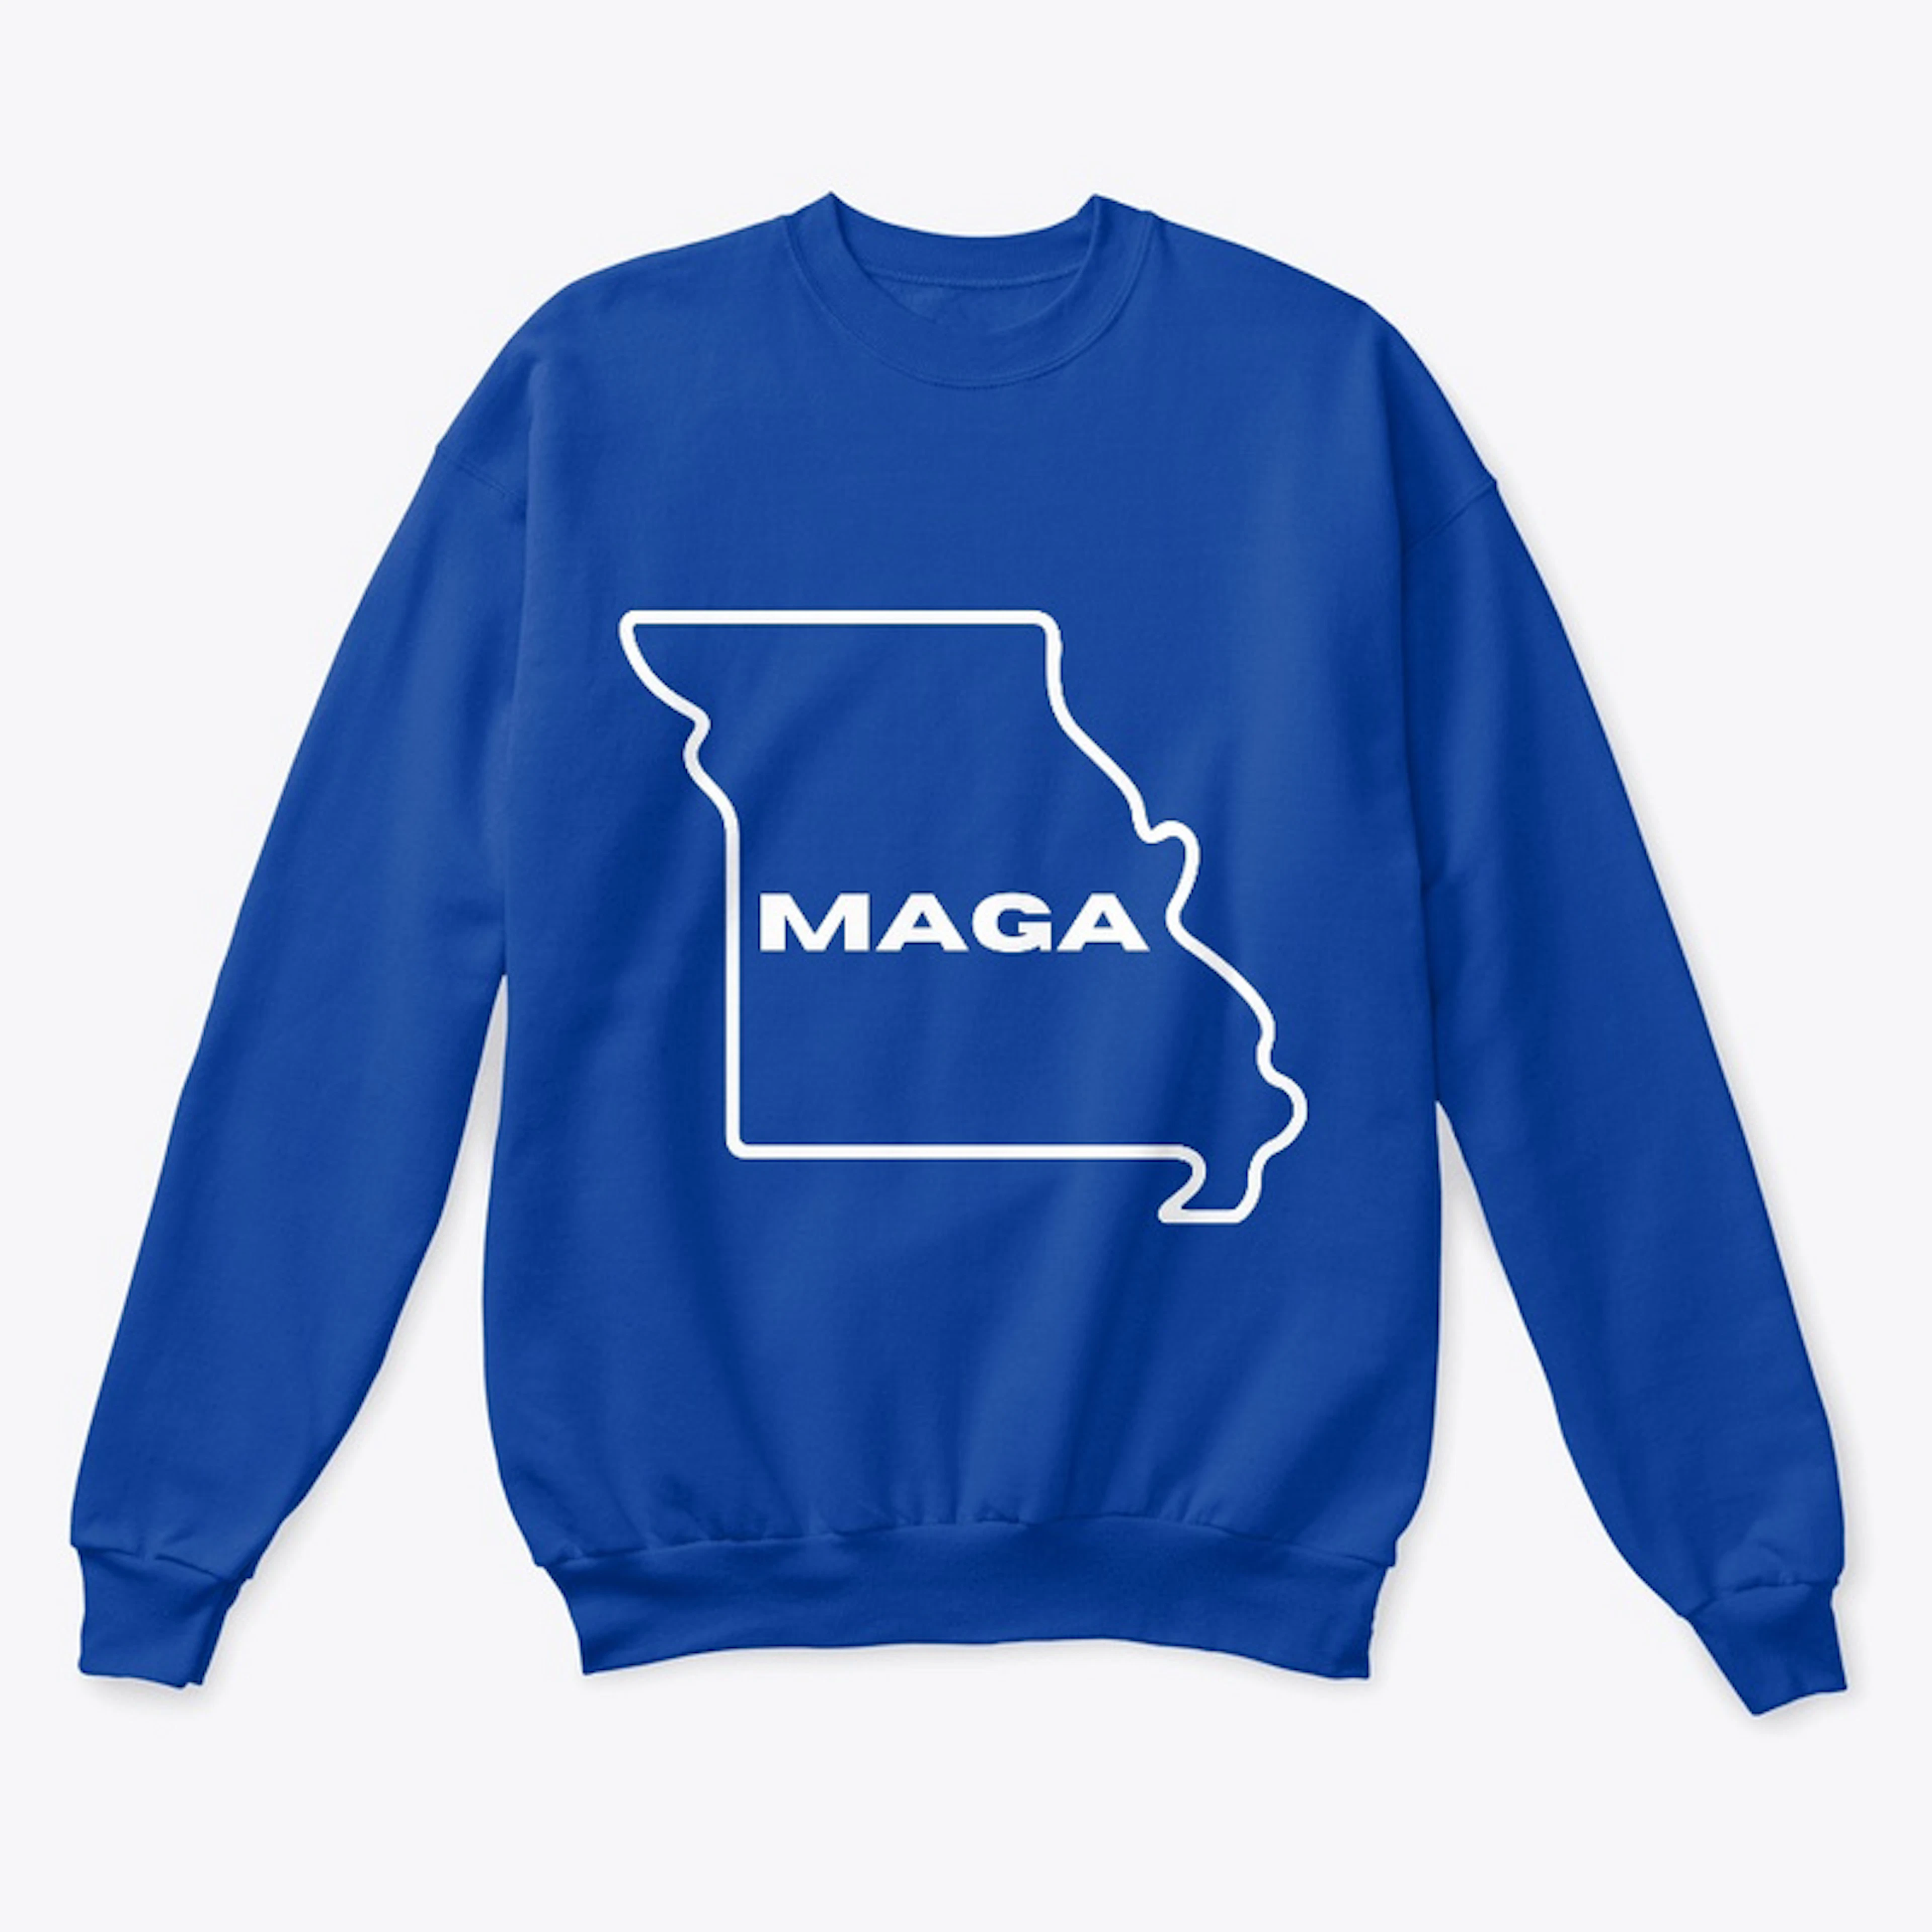 Make Missouri MAGA!